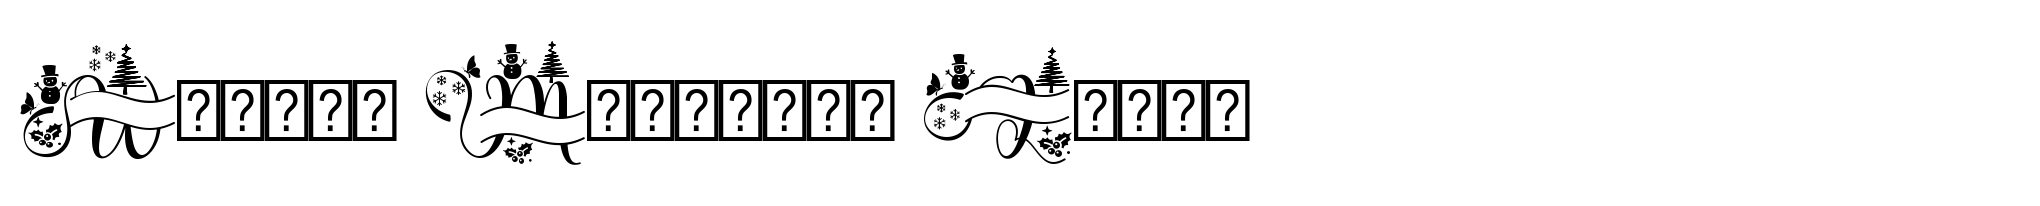 Winter Monogram Logos image